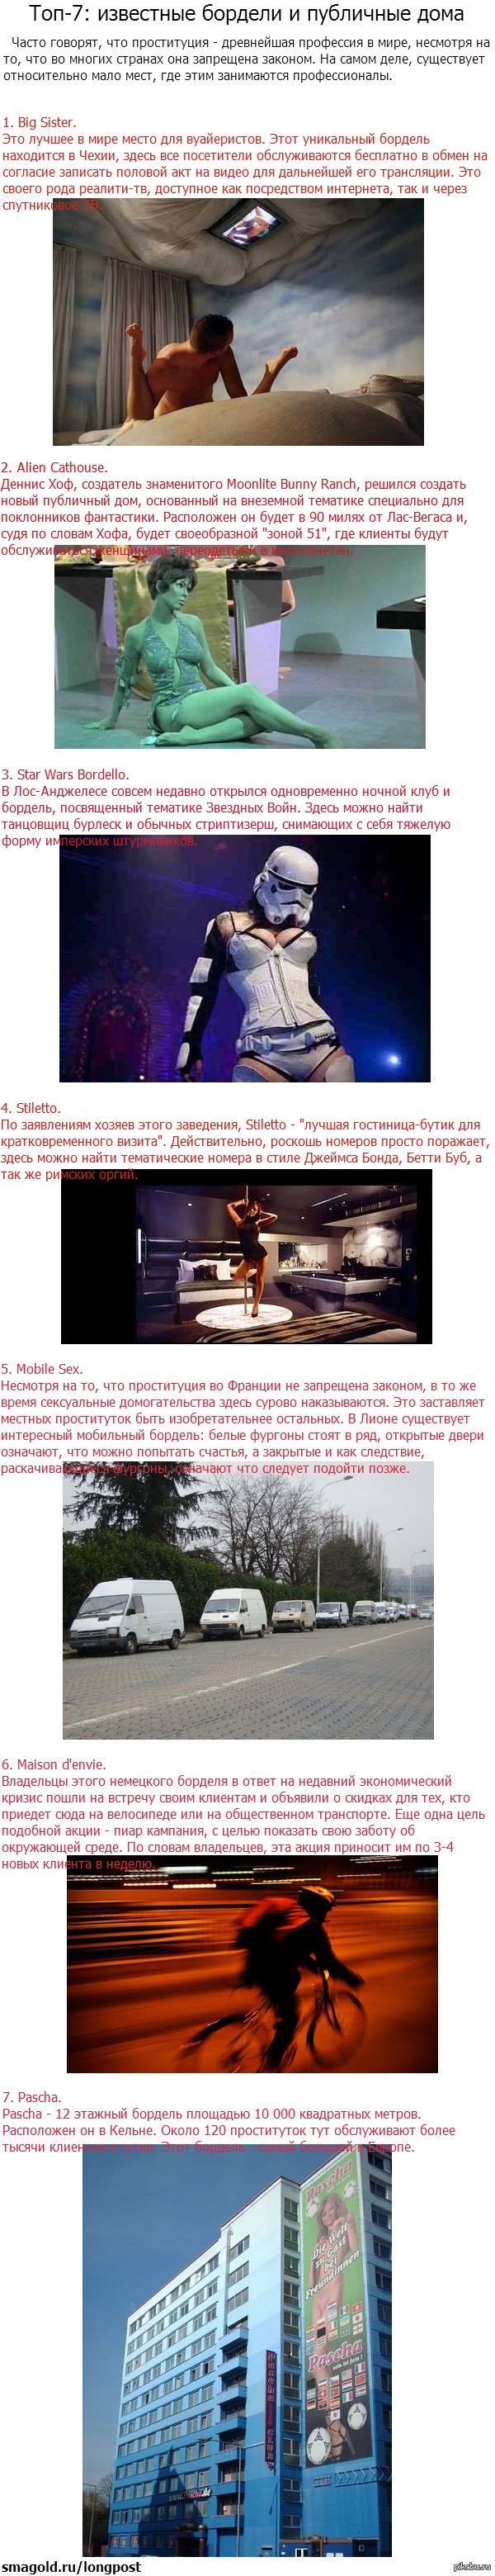 Известные бордели и публичные дома (30 фото) ⚡ ecomamochka.ru